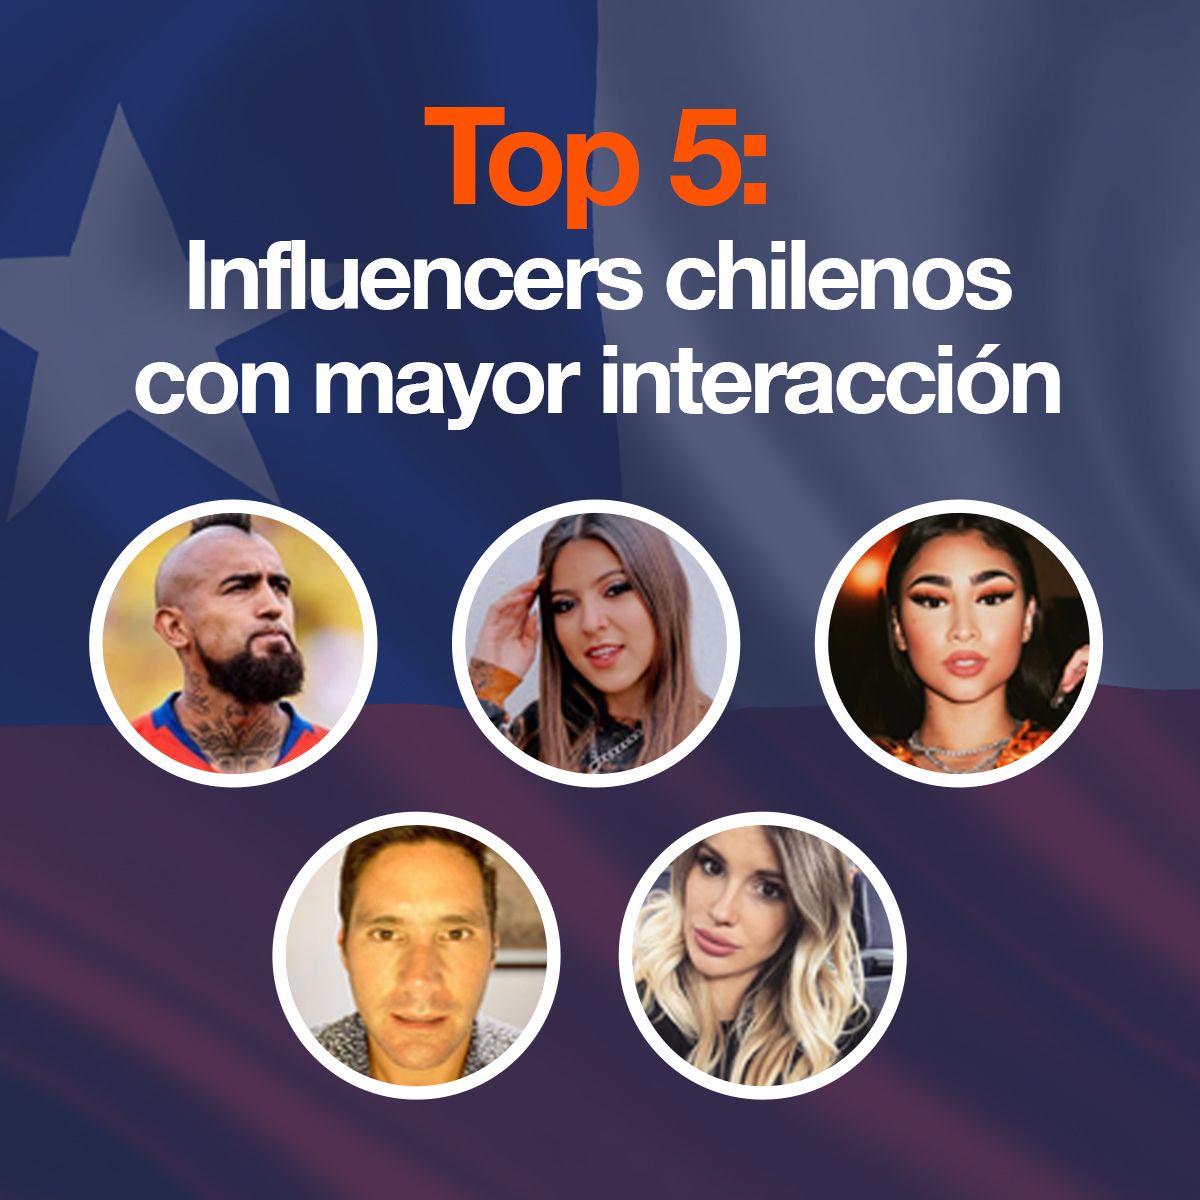 Top 5: Influencers chilenos con mayor interacción